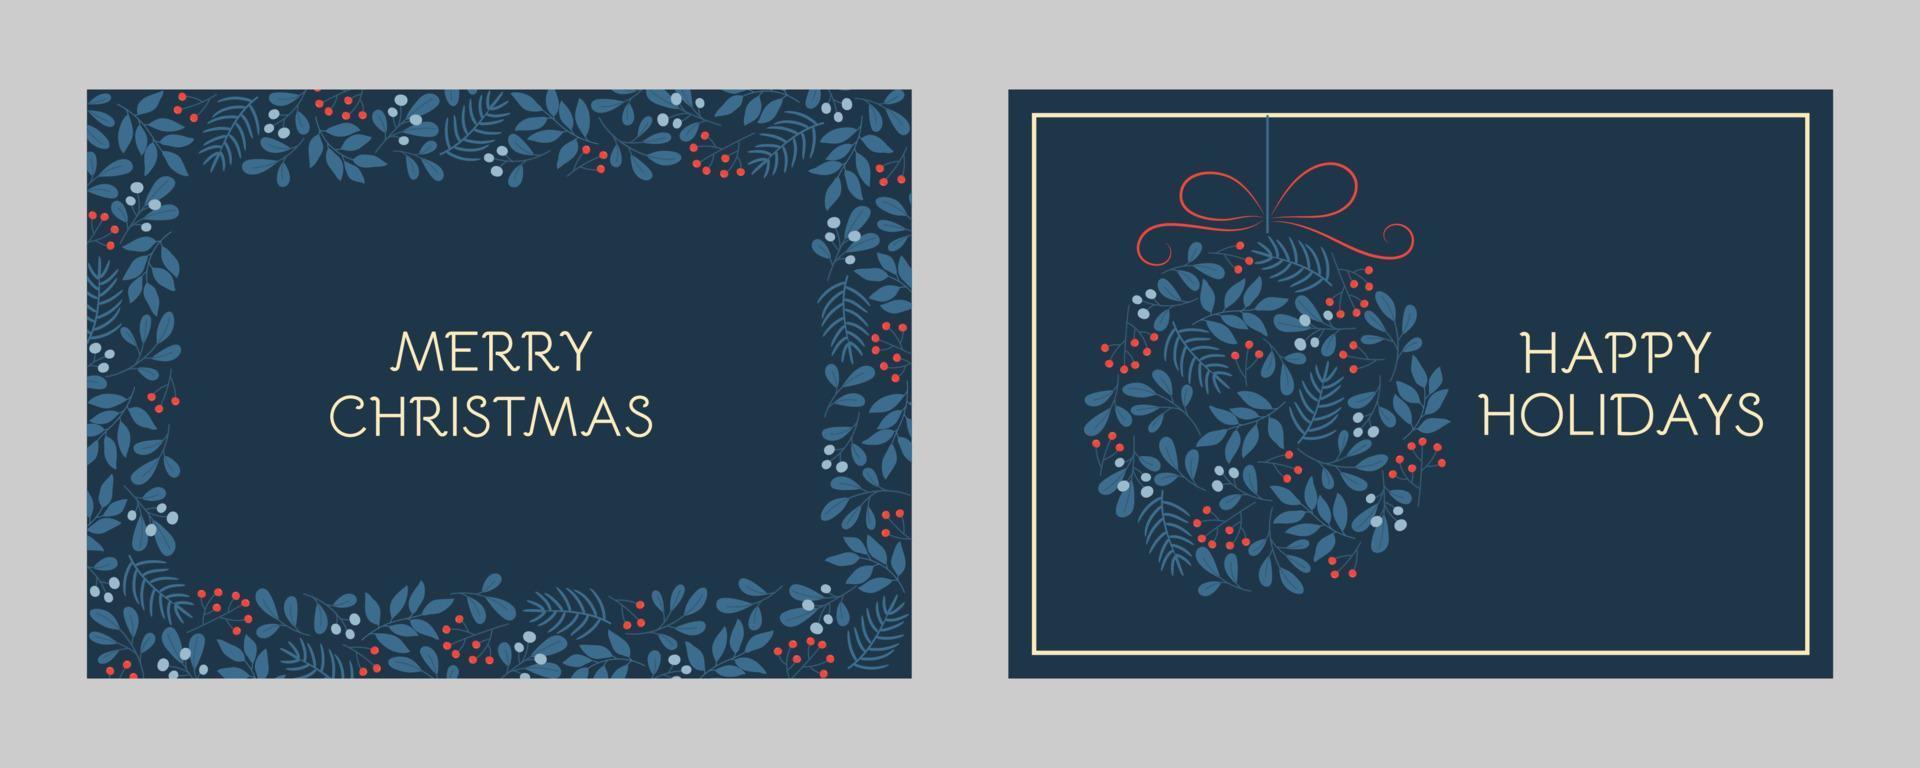 conjunto de tarjetas de felicitación navideñas con marcos florales y adornos navideños. patrones de ramitas de invierno en colores azules vector